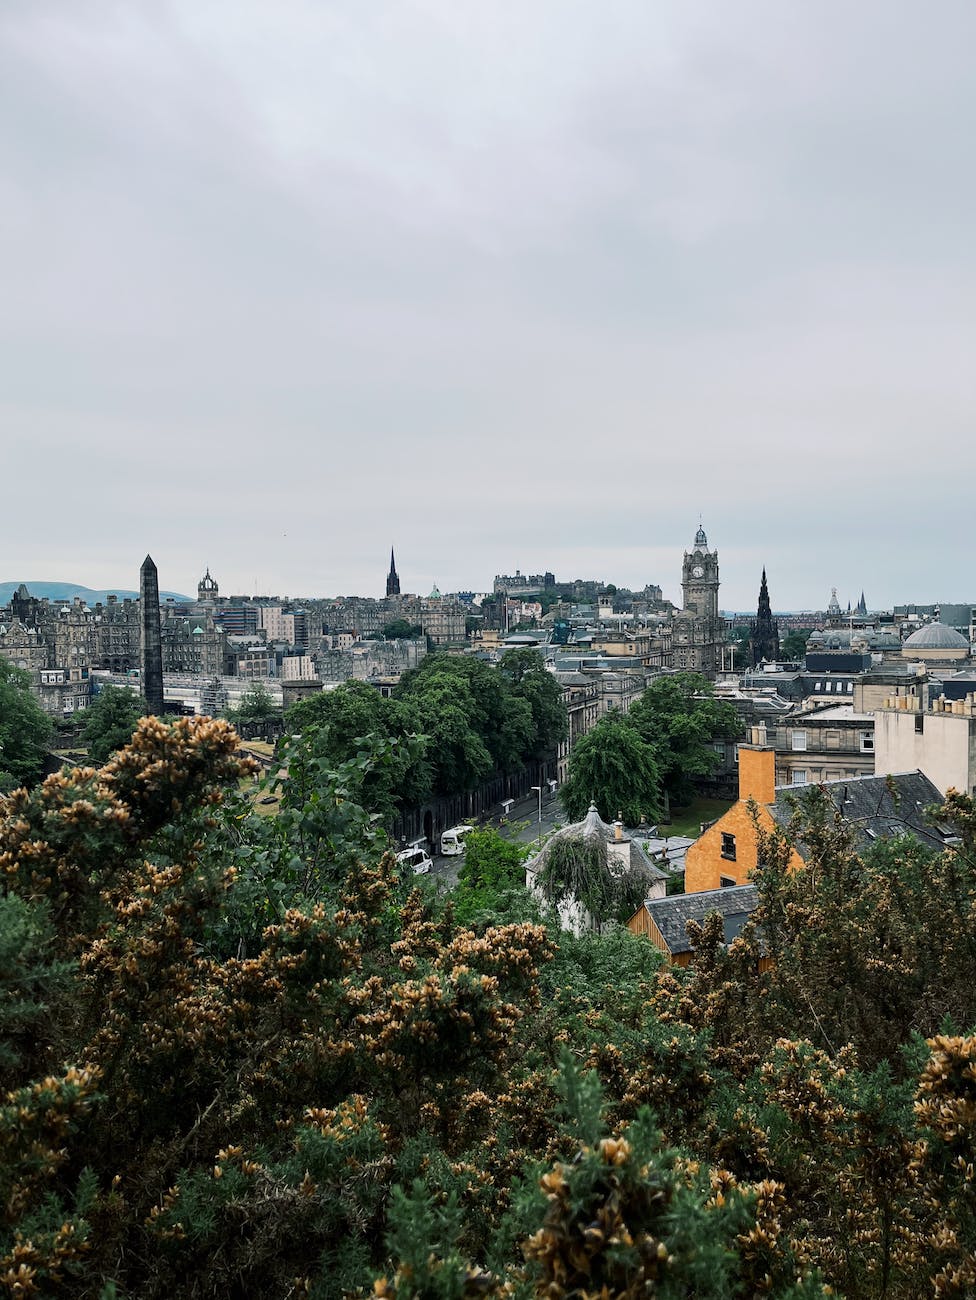 cityscape of edinburgh in scotland